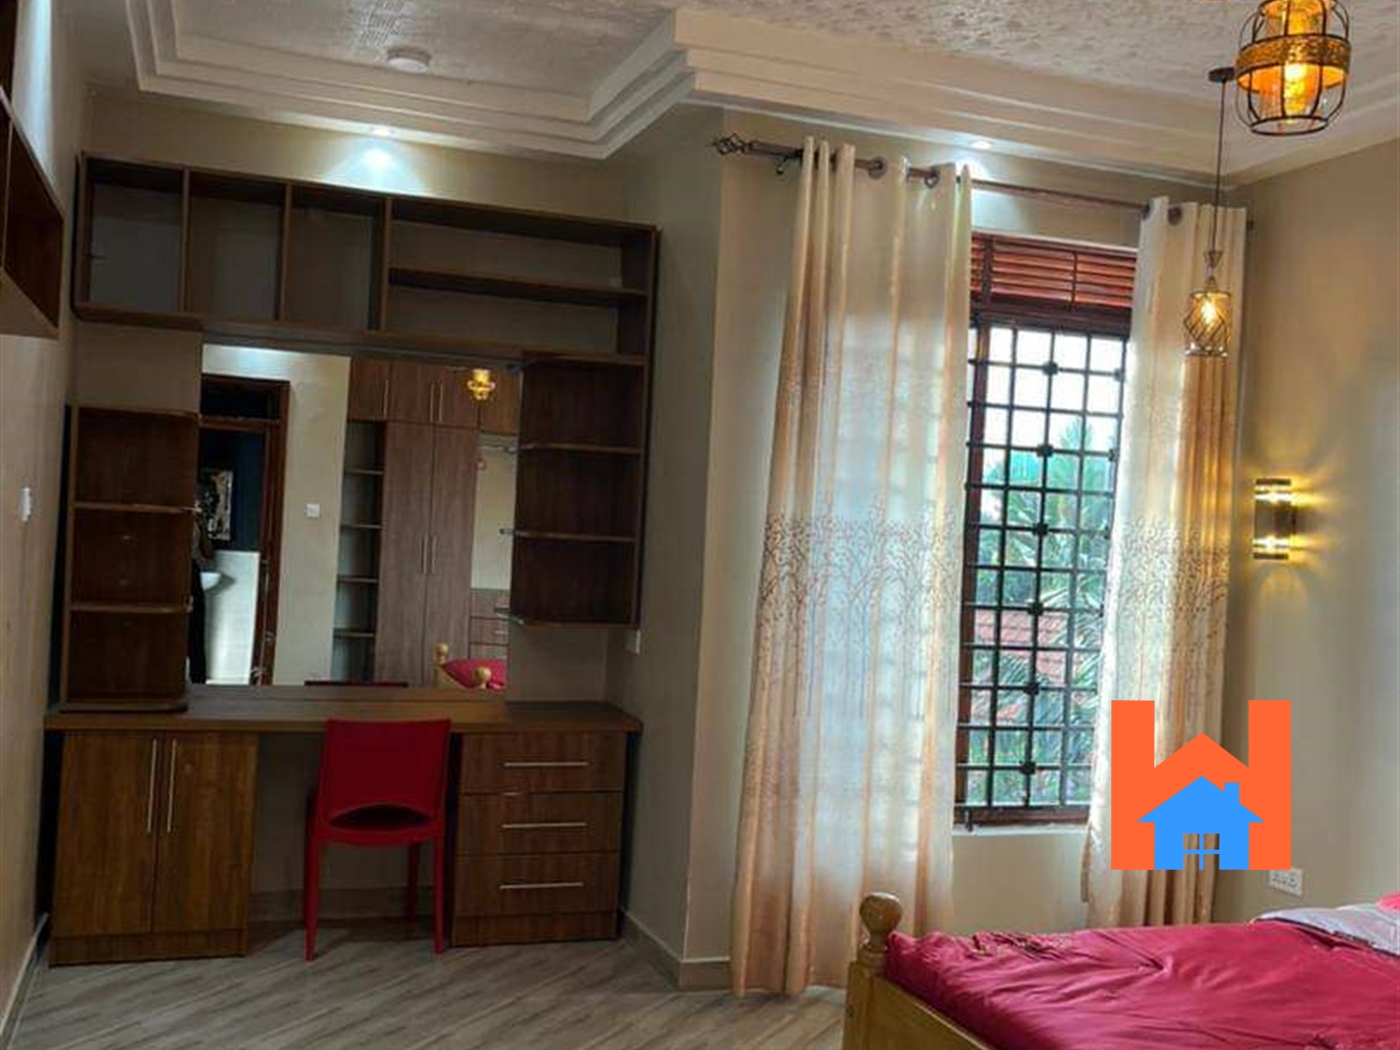 Apartment block for rent in Bukoto Kampala